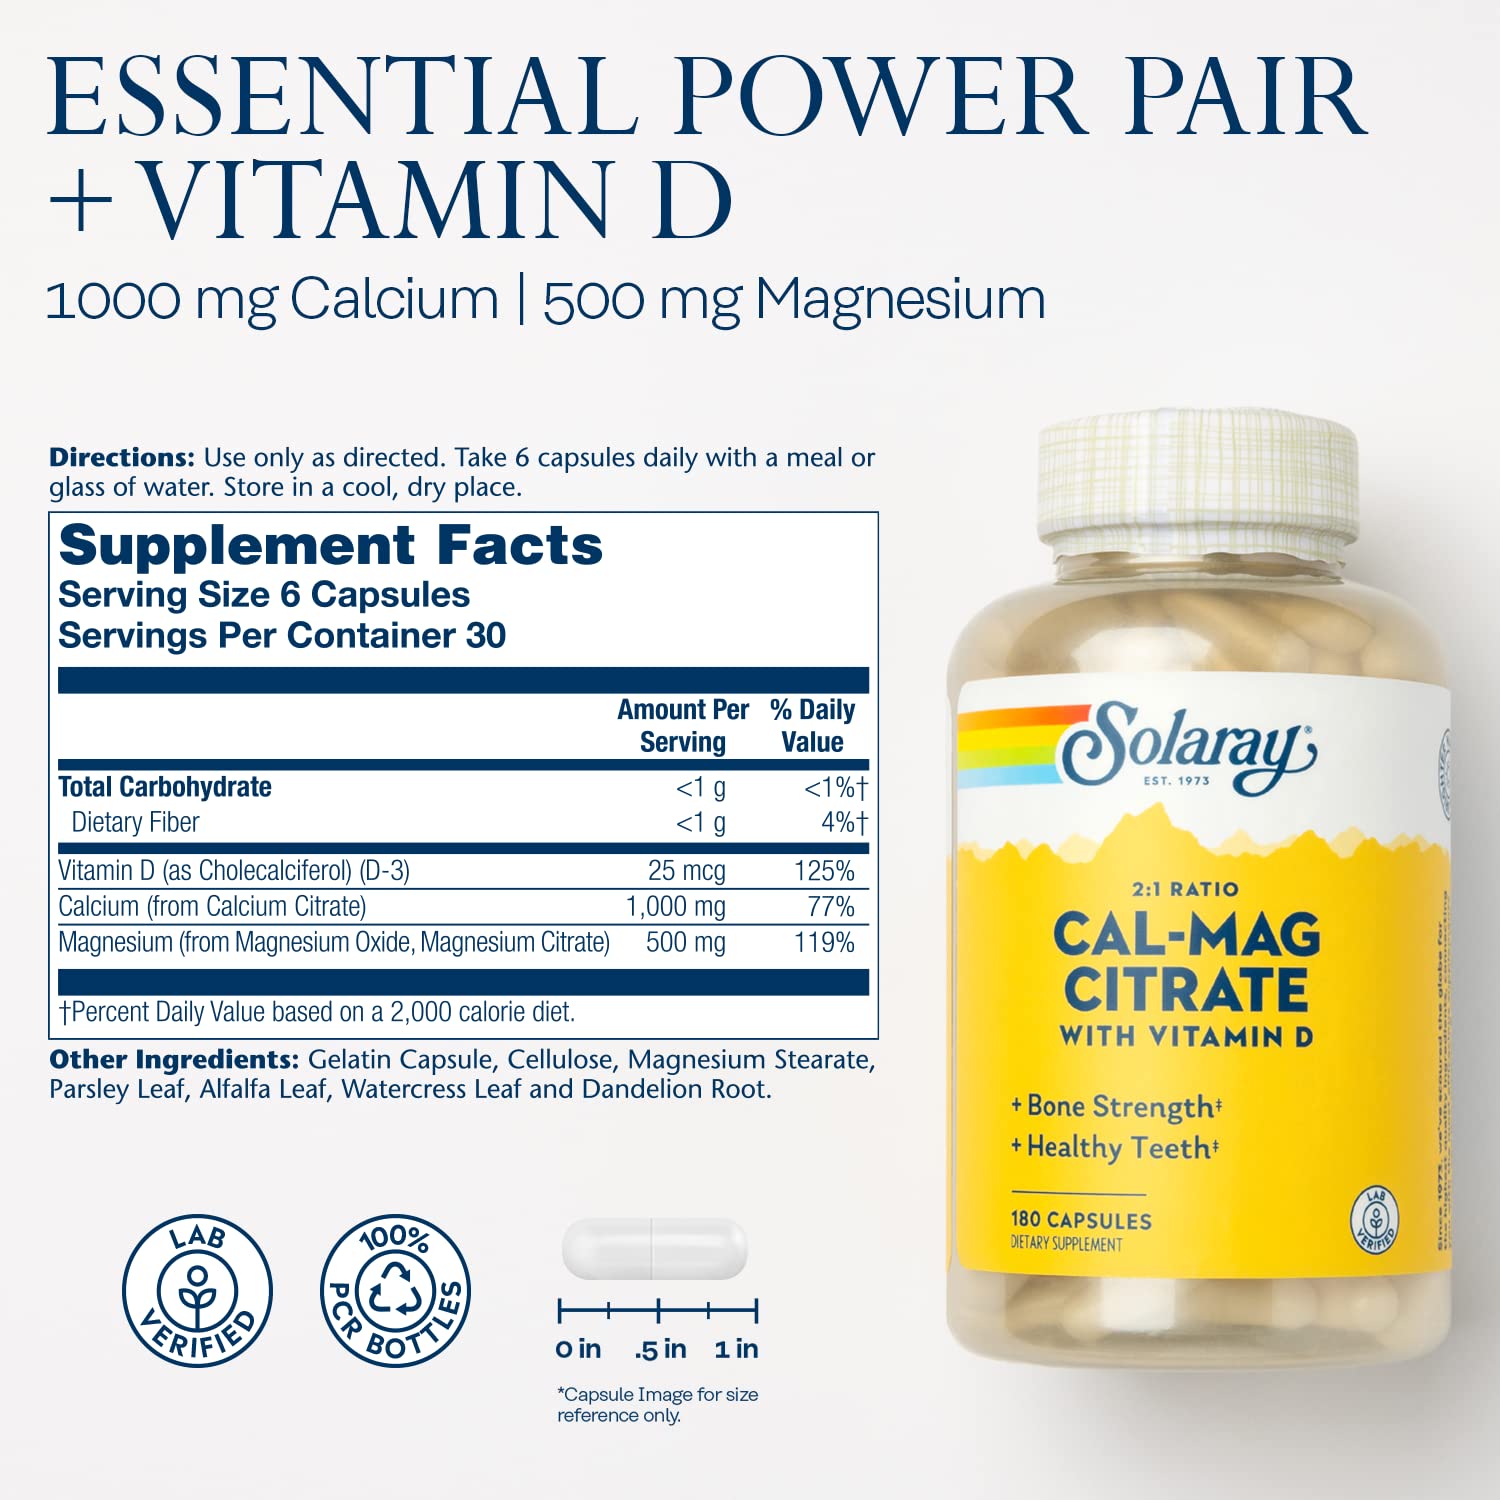 Solaray Calcium & Magnesium Citrate with Vitamin D-3 2:1 Ratio 180ct Capsule